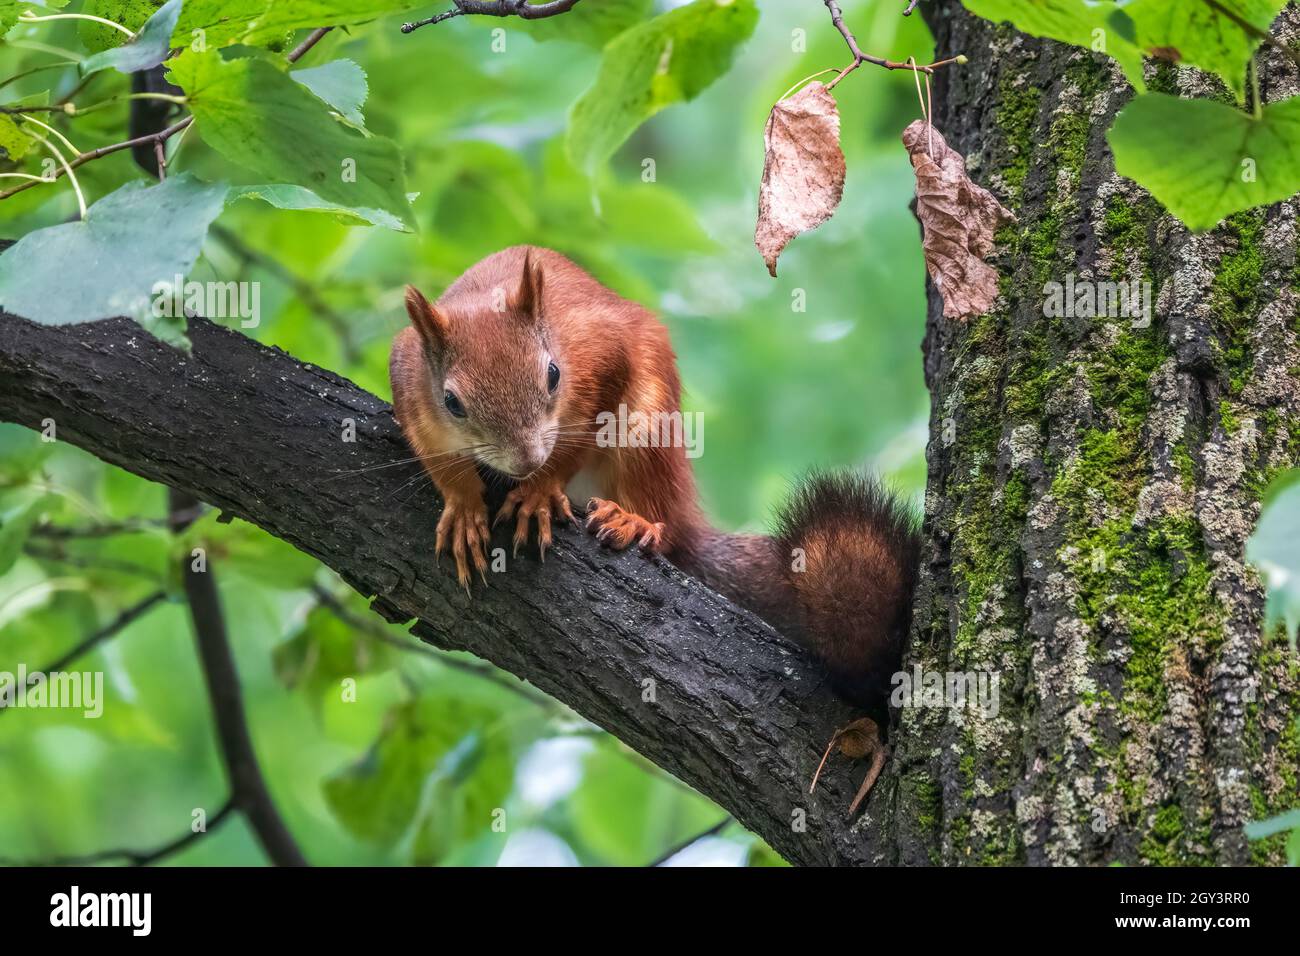 Le jeune écureuil est assis sur un arbre en été. Un jeune écureuil beau et aux cheveux rouges est assis sur une branche d'arbre en été. Écureuil rouge eurasien, Sciurus vulgari Banque D'Images